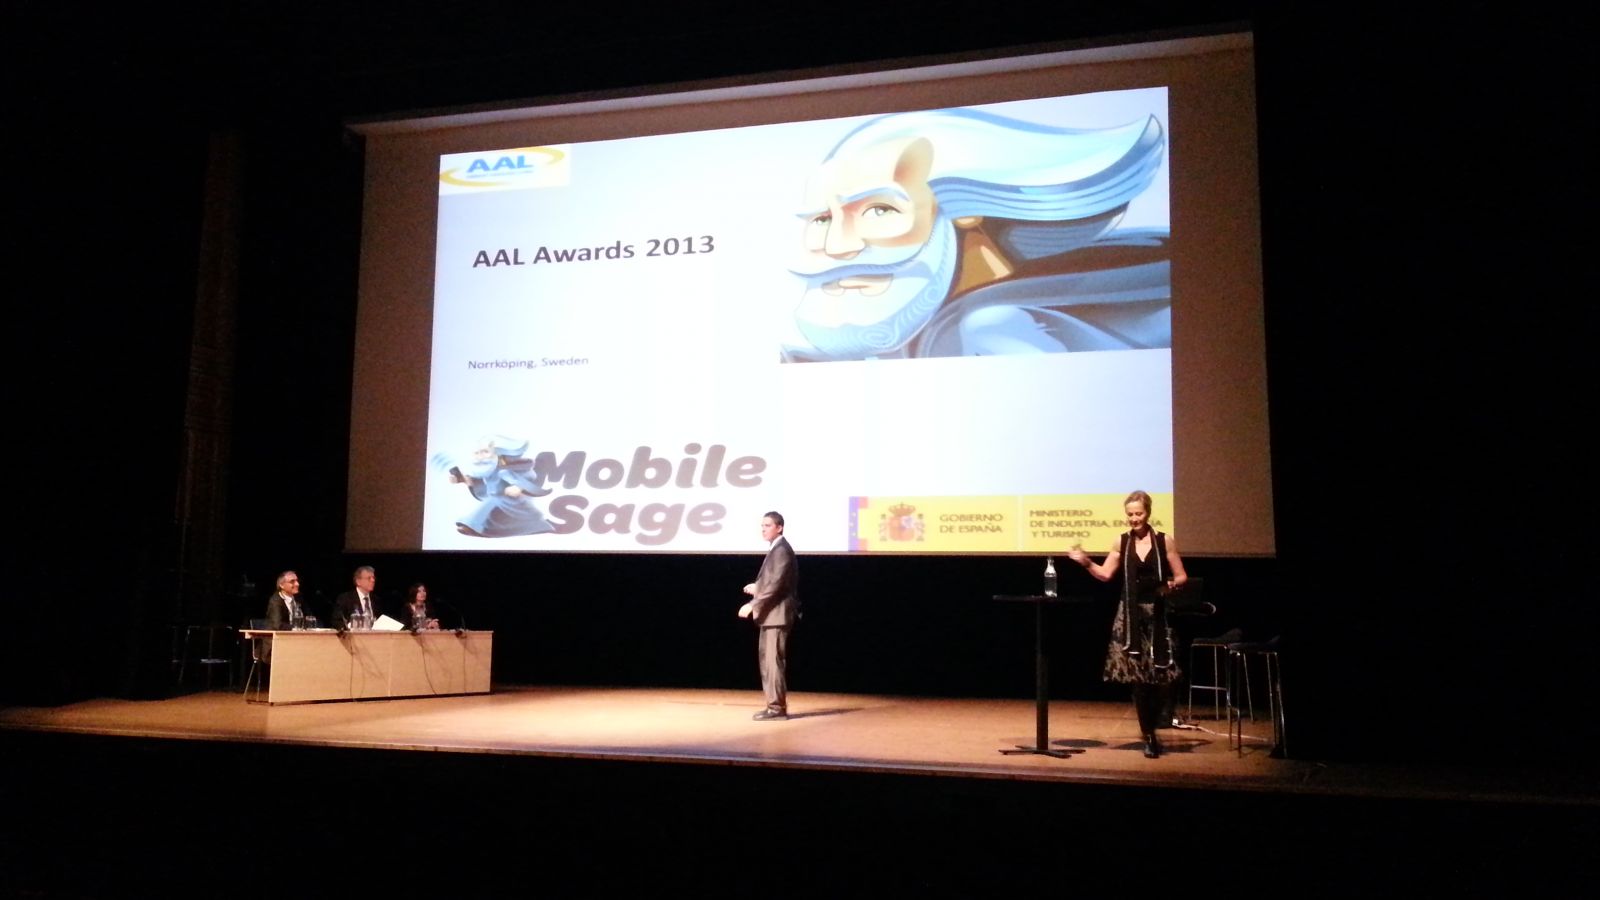 Jordi presenting MobileSage